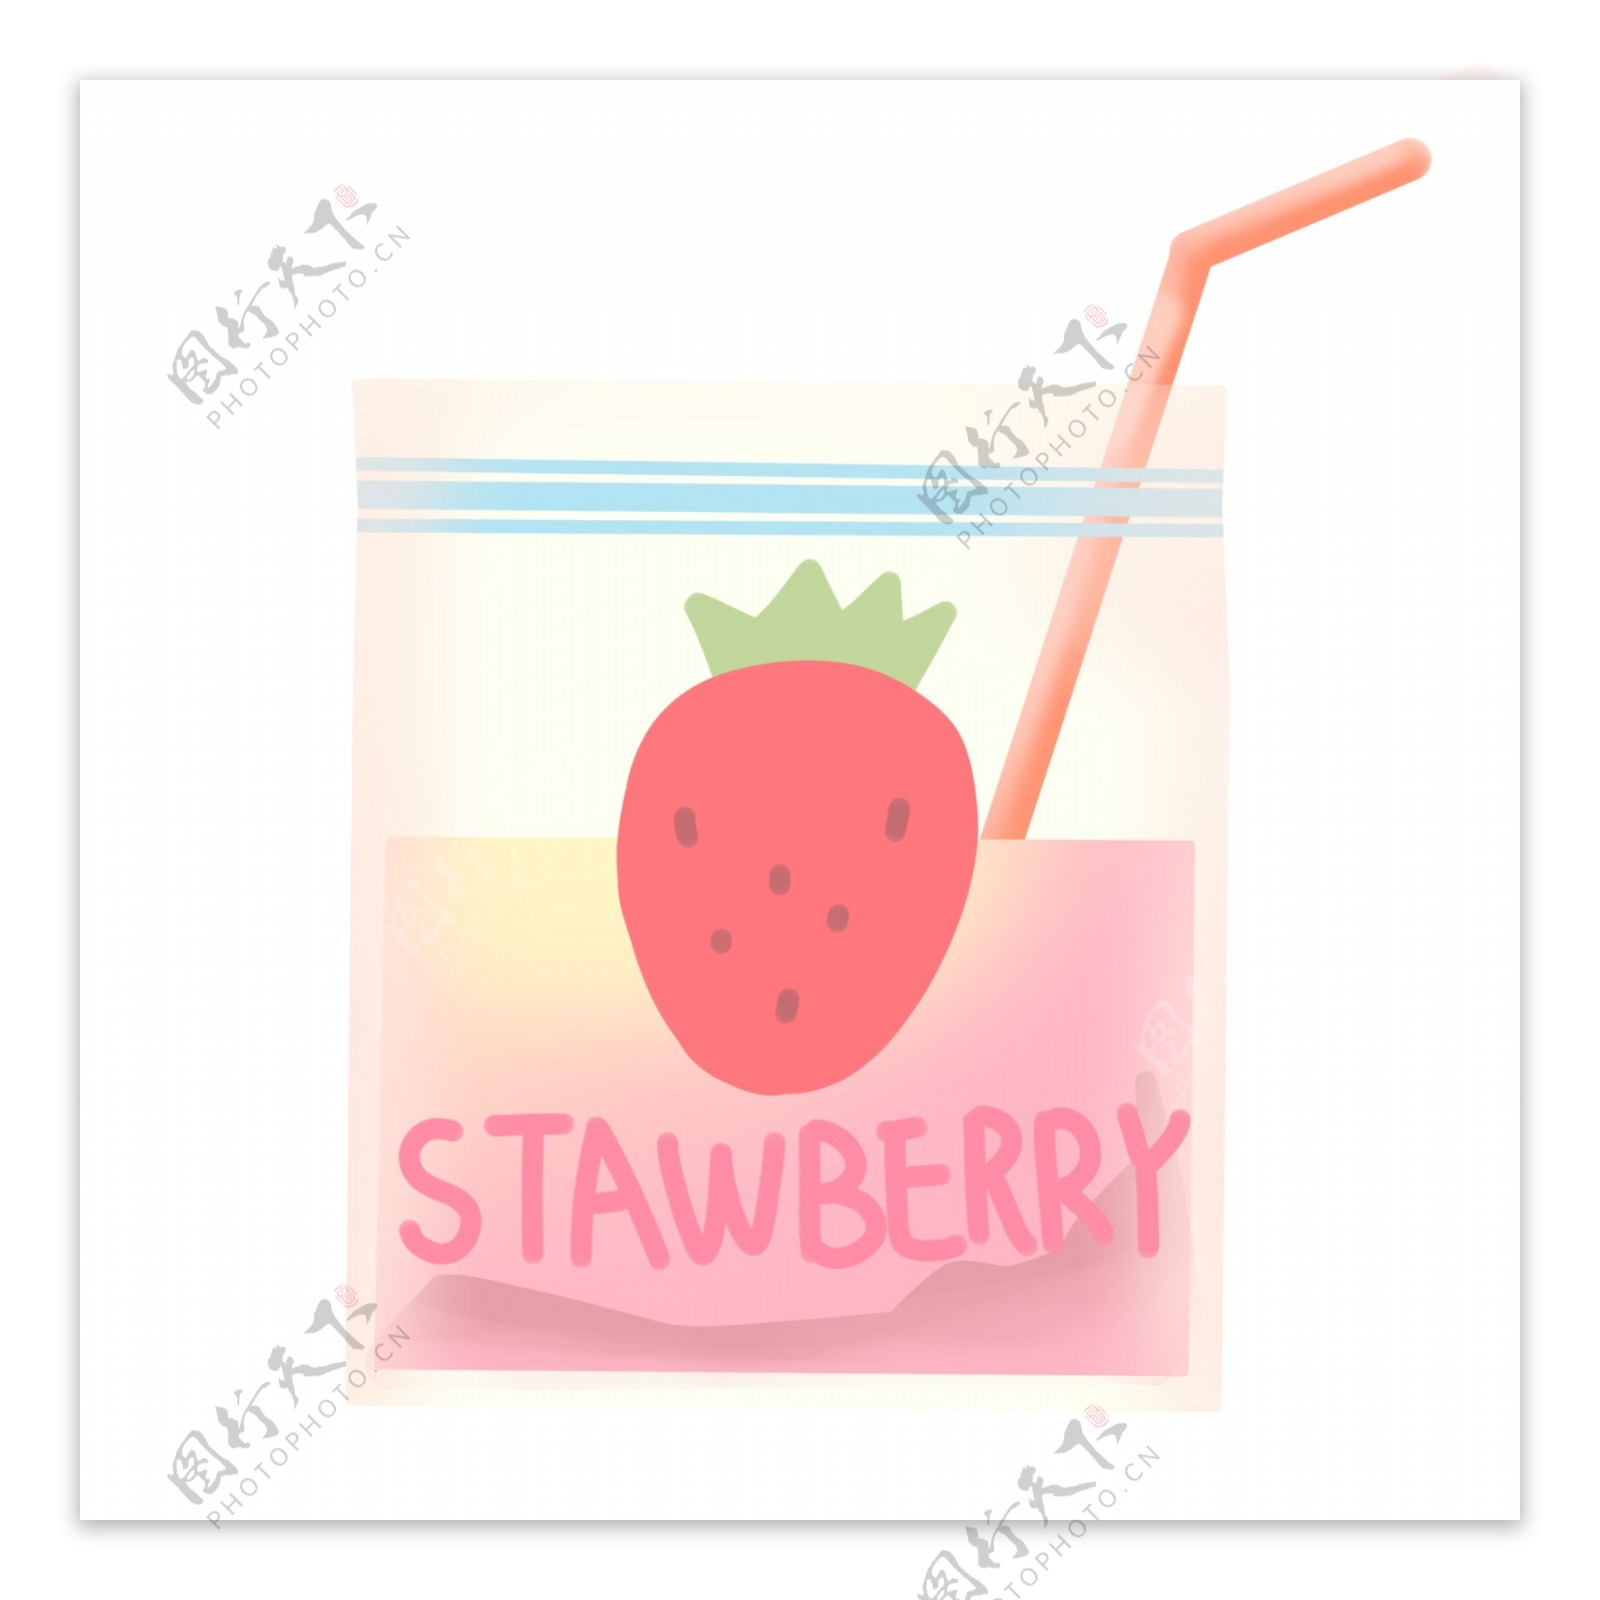 草莓袋装果汁饮料